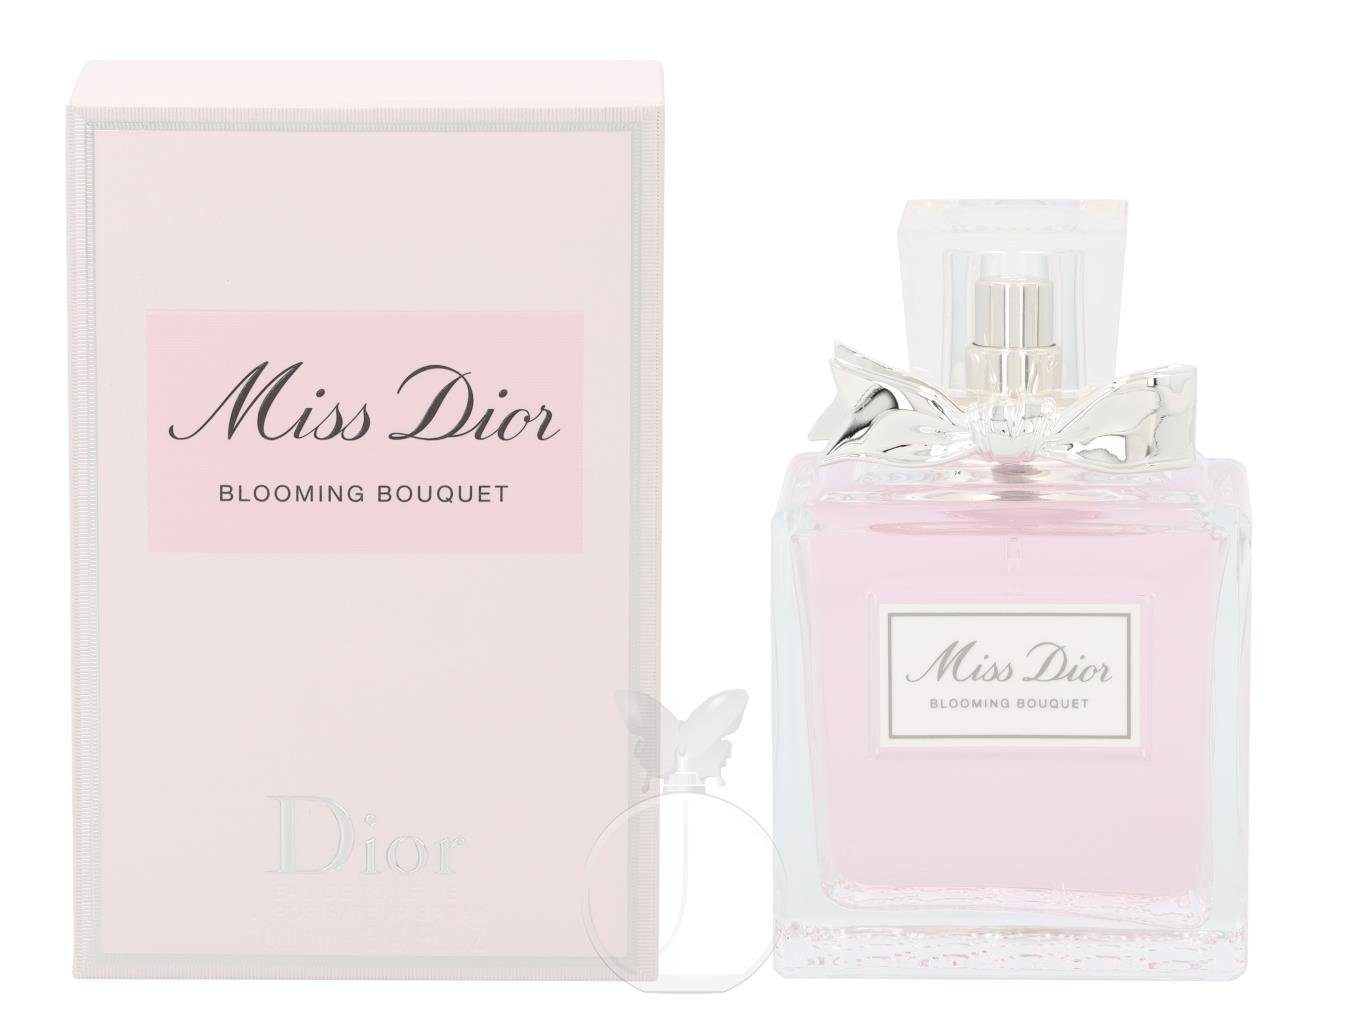 Dior Eau de de Eau Toilette Dior Bouquet Miss Blooming Dior Toilette